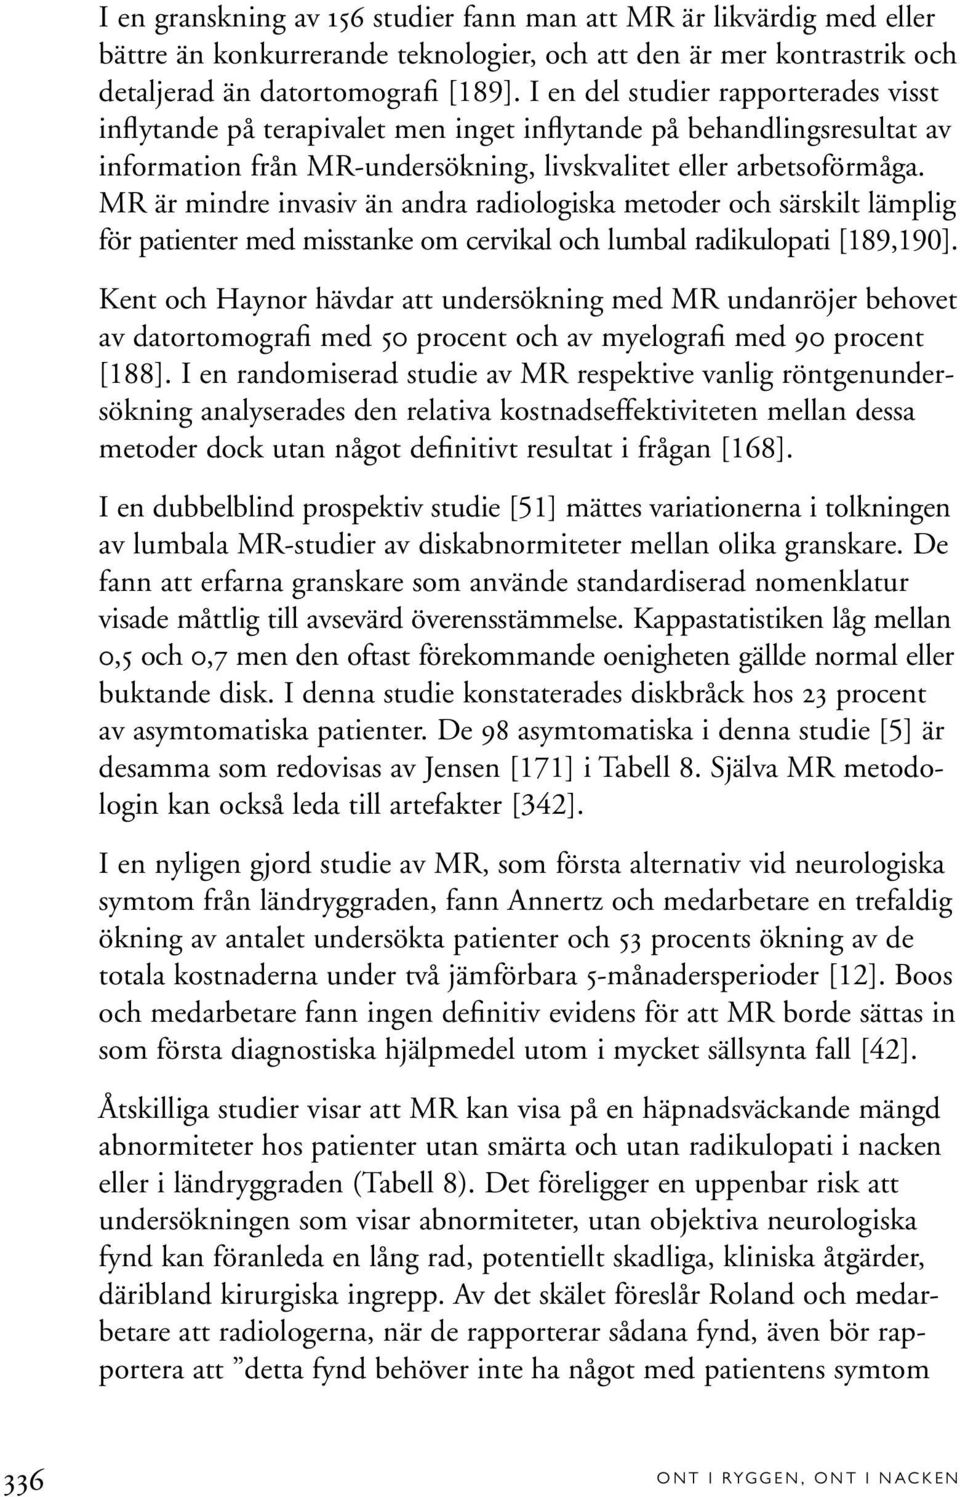 MR är mindre invasiv än andra radiologiska metoder och särskilt lämplig för patienter med misstanke om cervikal och lumbal radikulopati [189,190].